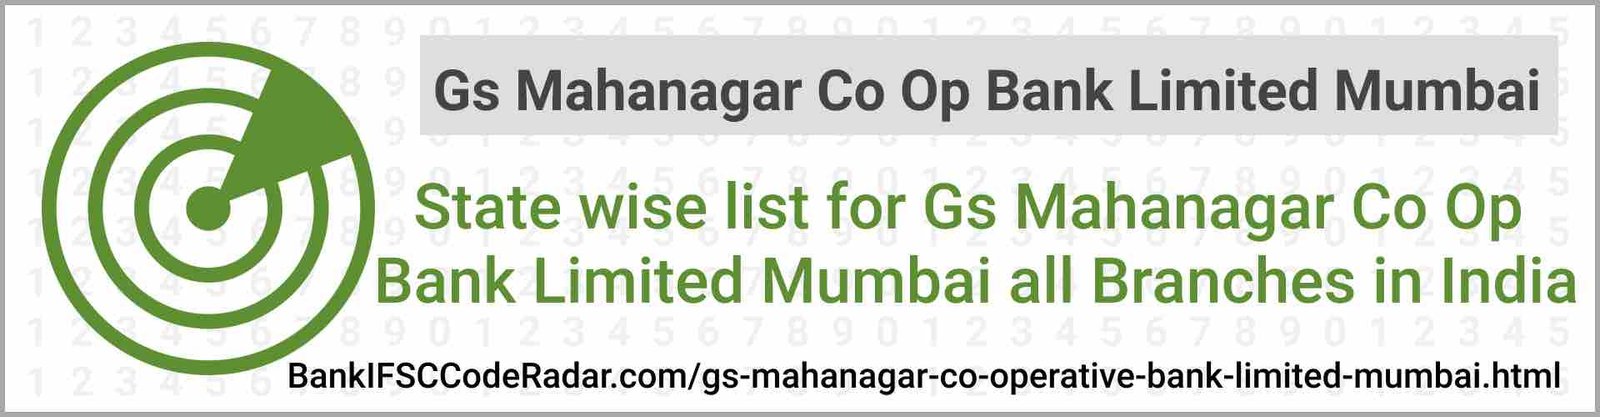 Gs Mahanagar Co Operative Bank Limited Mumbai All Branches India